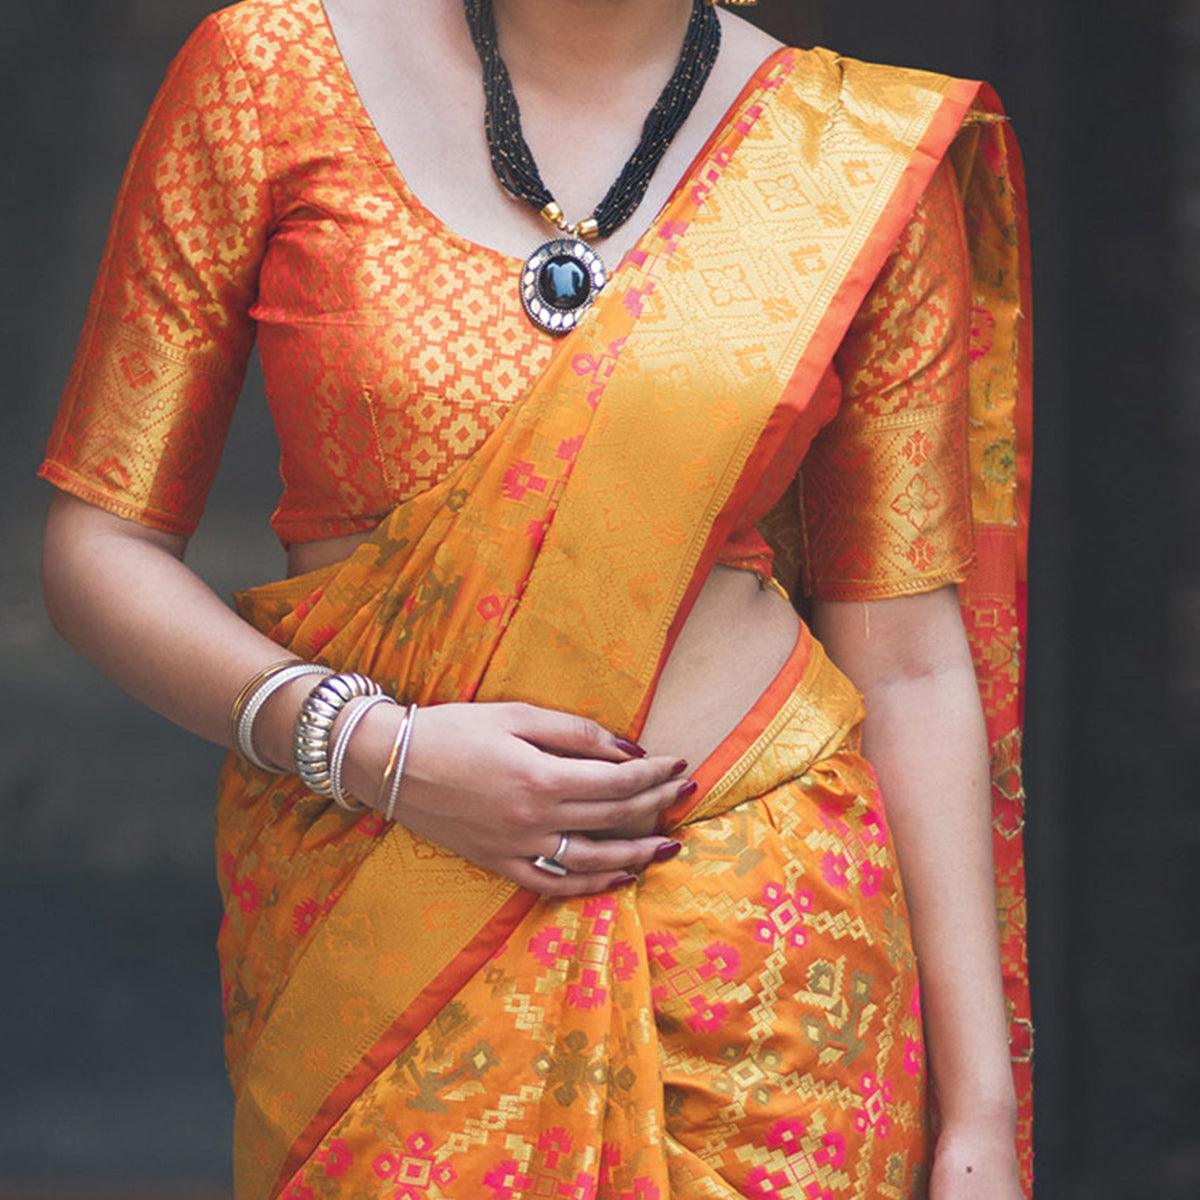 Arresting Yellow Colored Festive Wear Designer Woven Patola Silk Saree - Peachmode